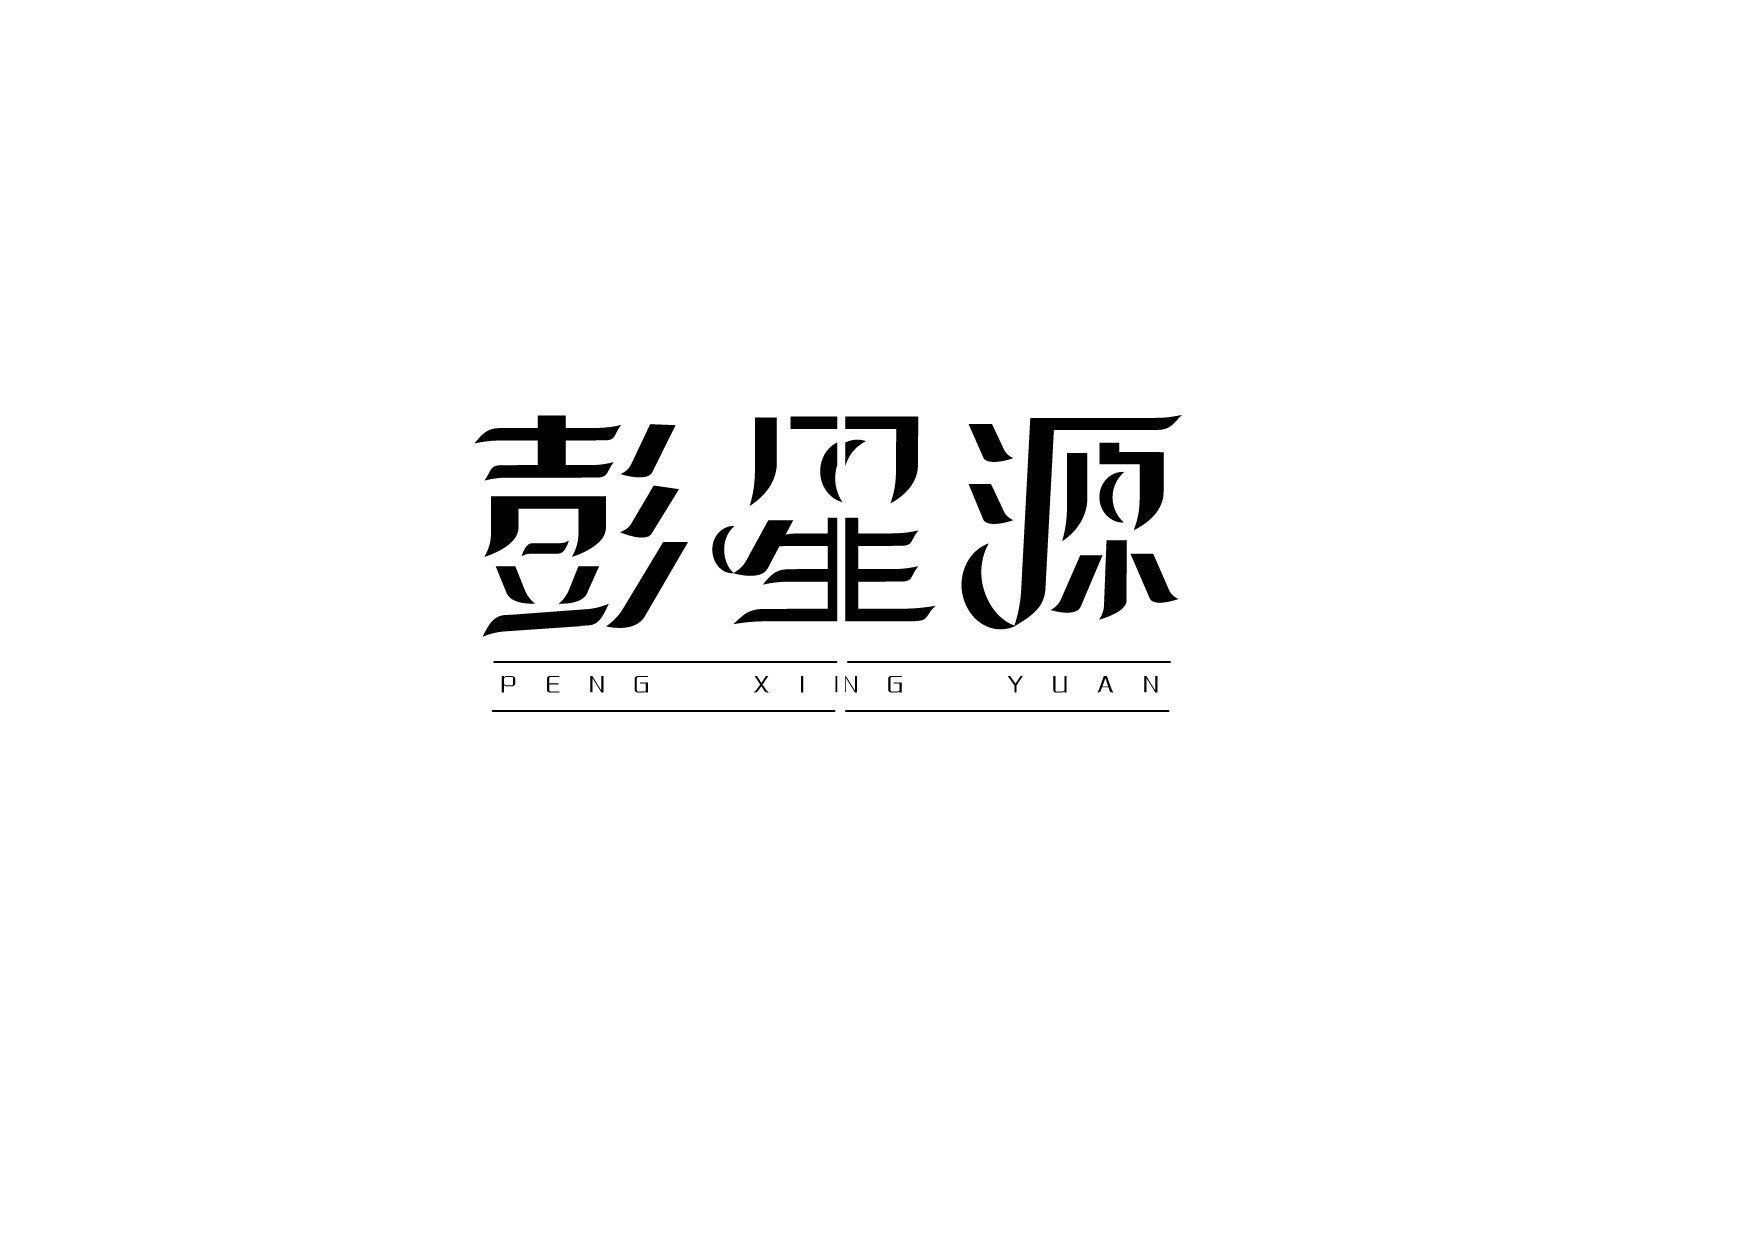 把名字设计成logo 中文图片